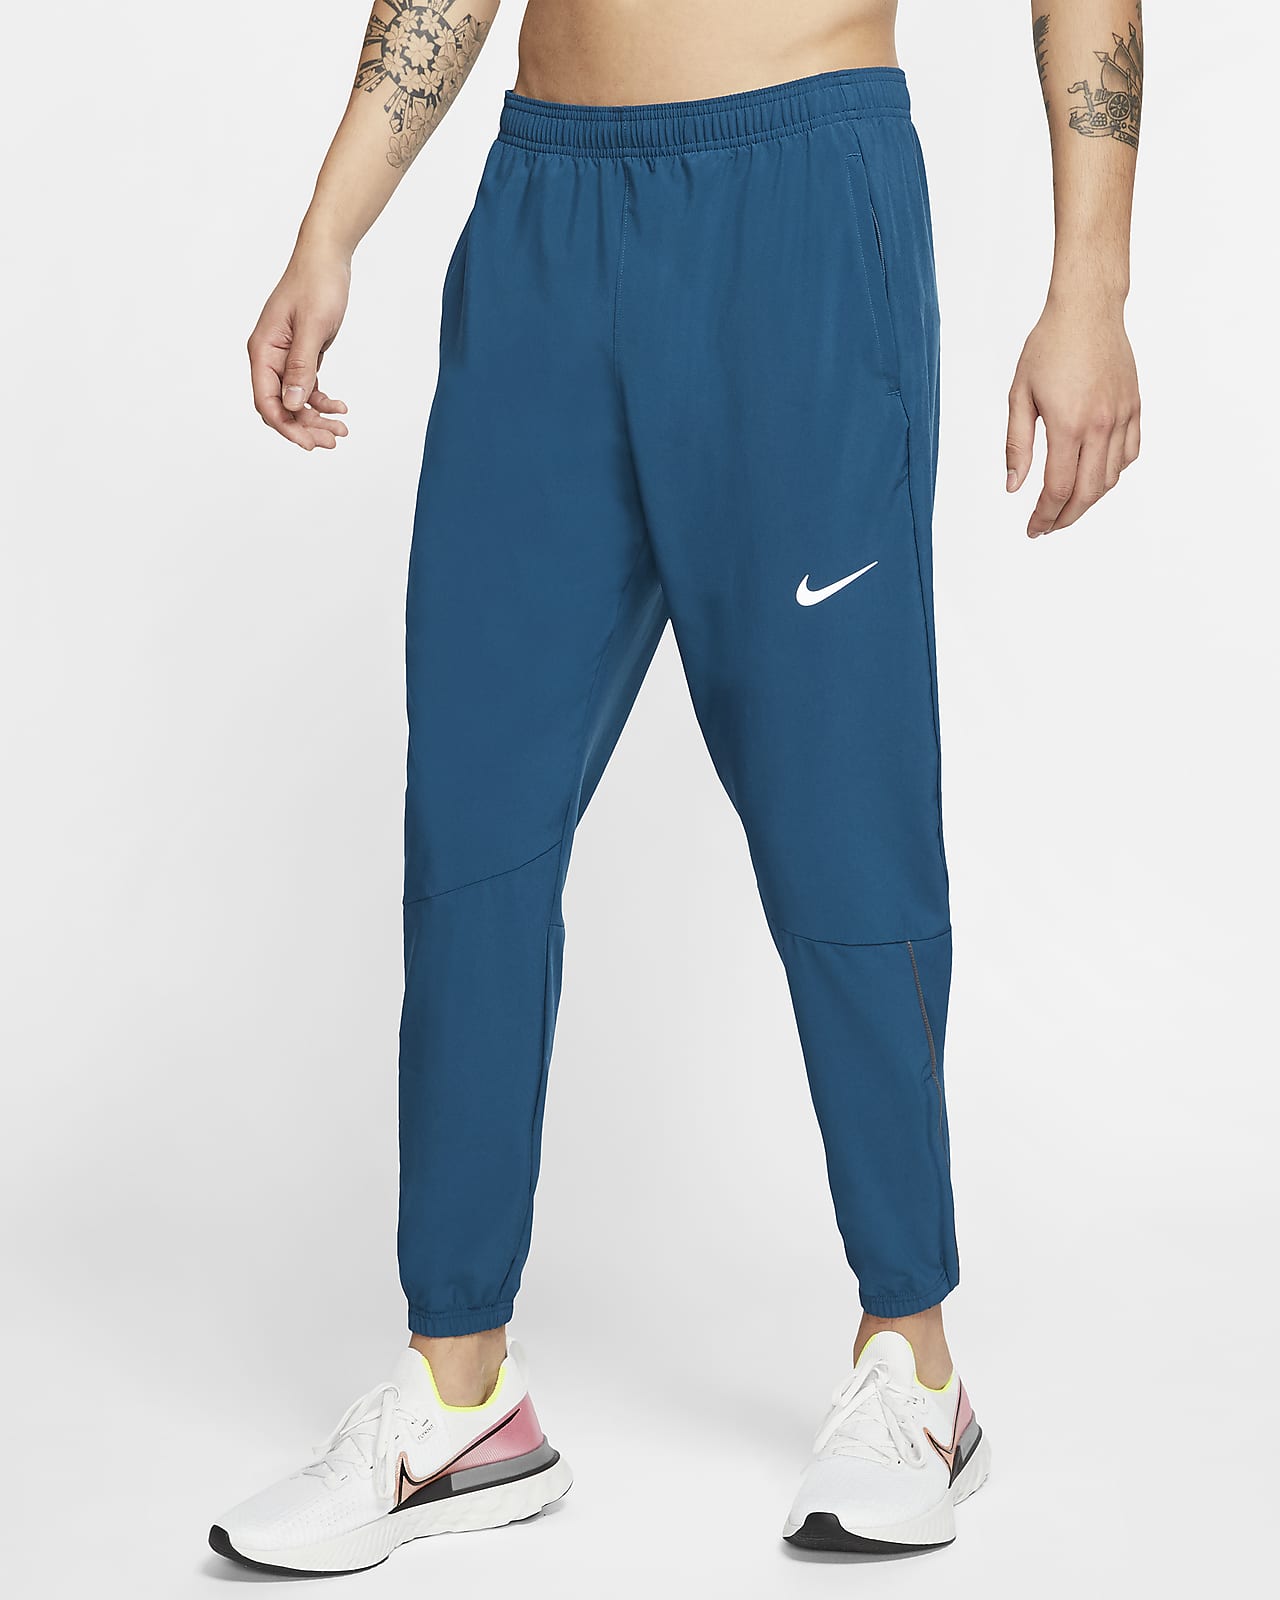 Pantalones tejidos de running para hombre Nike Essential. Nike.com